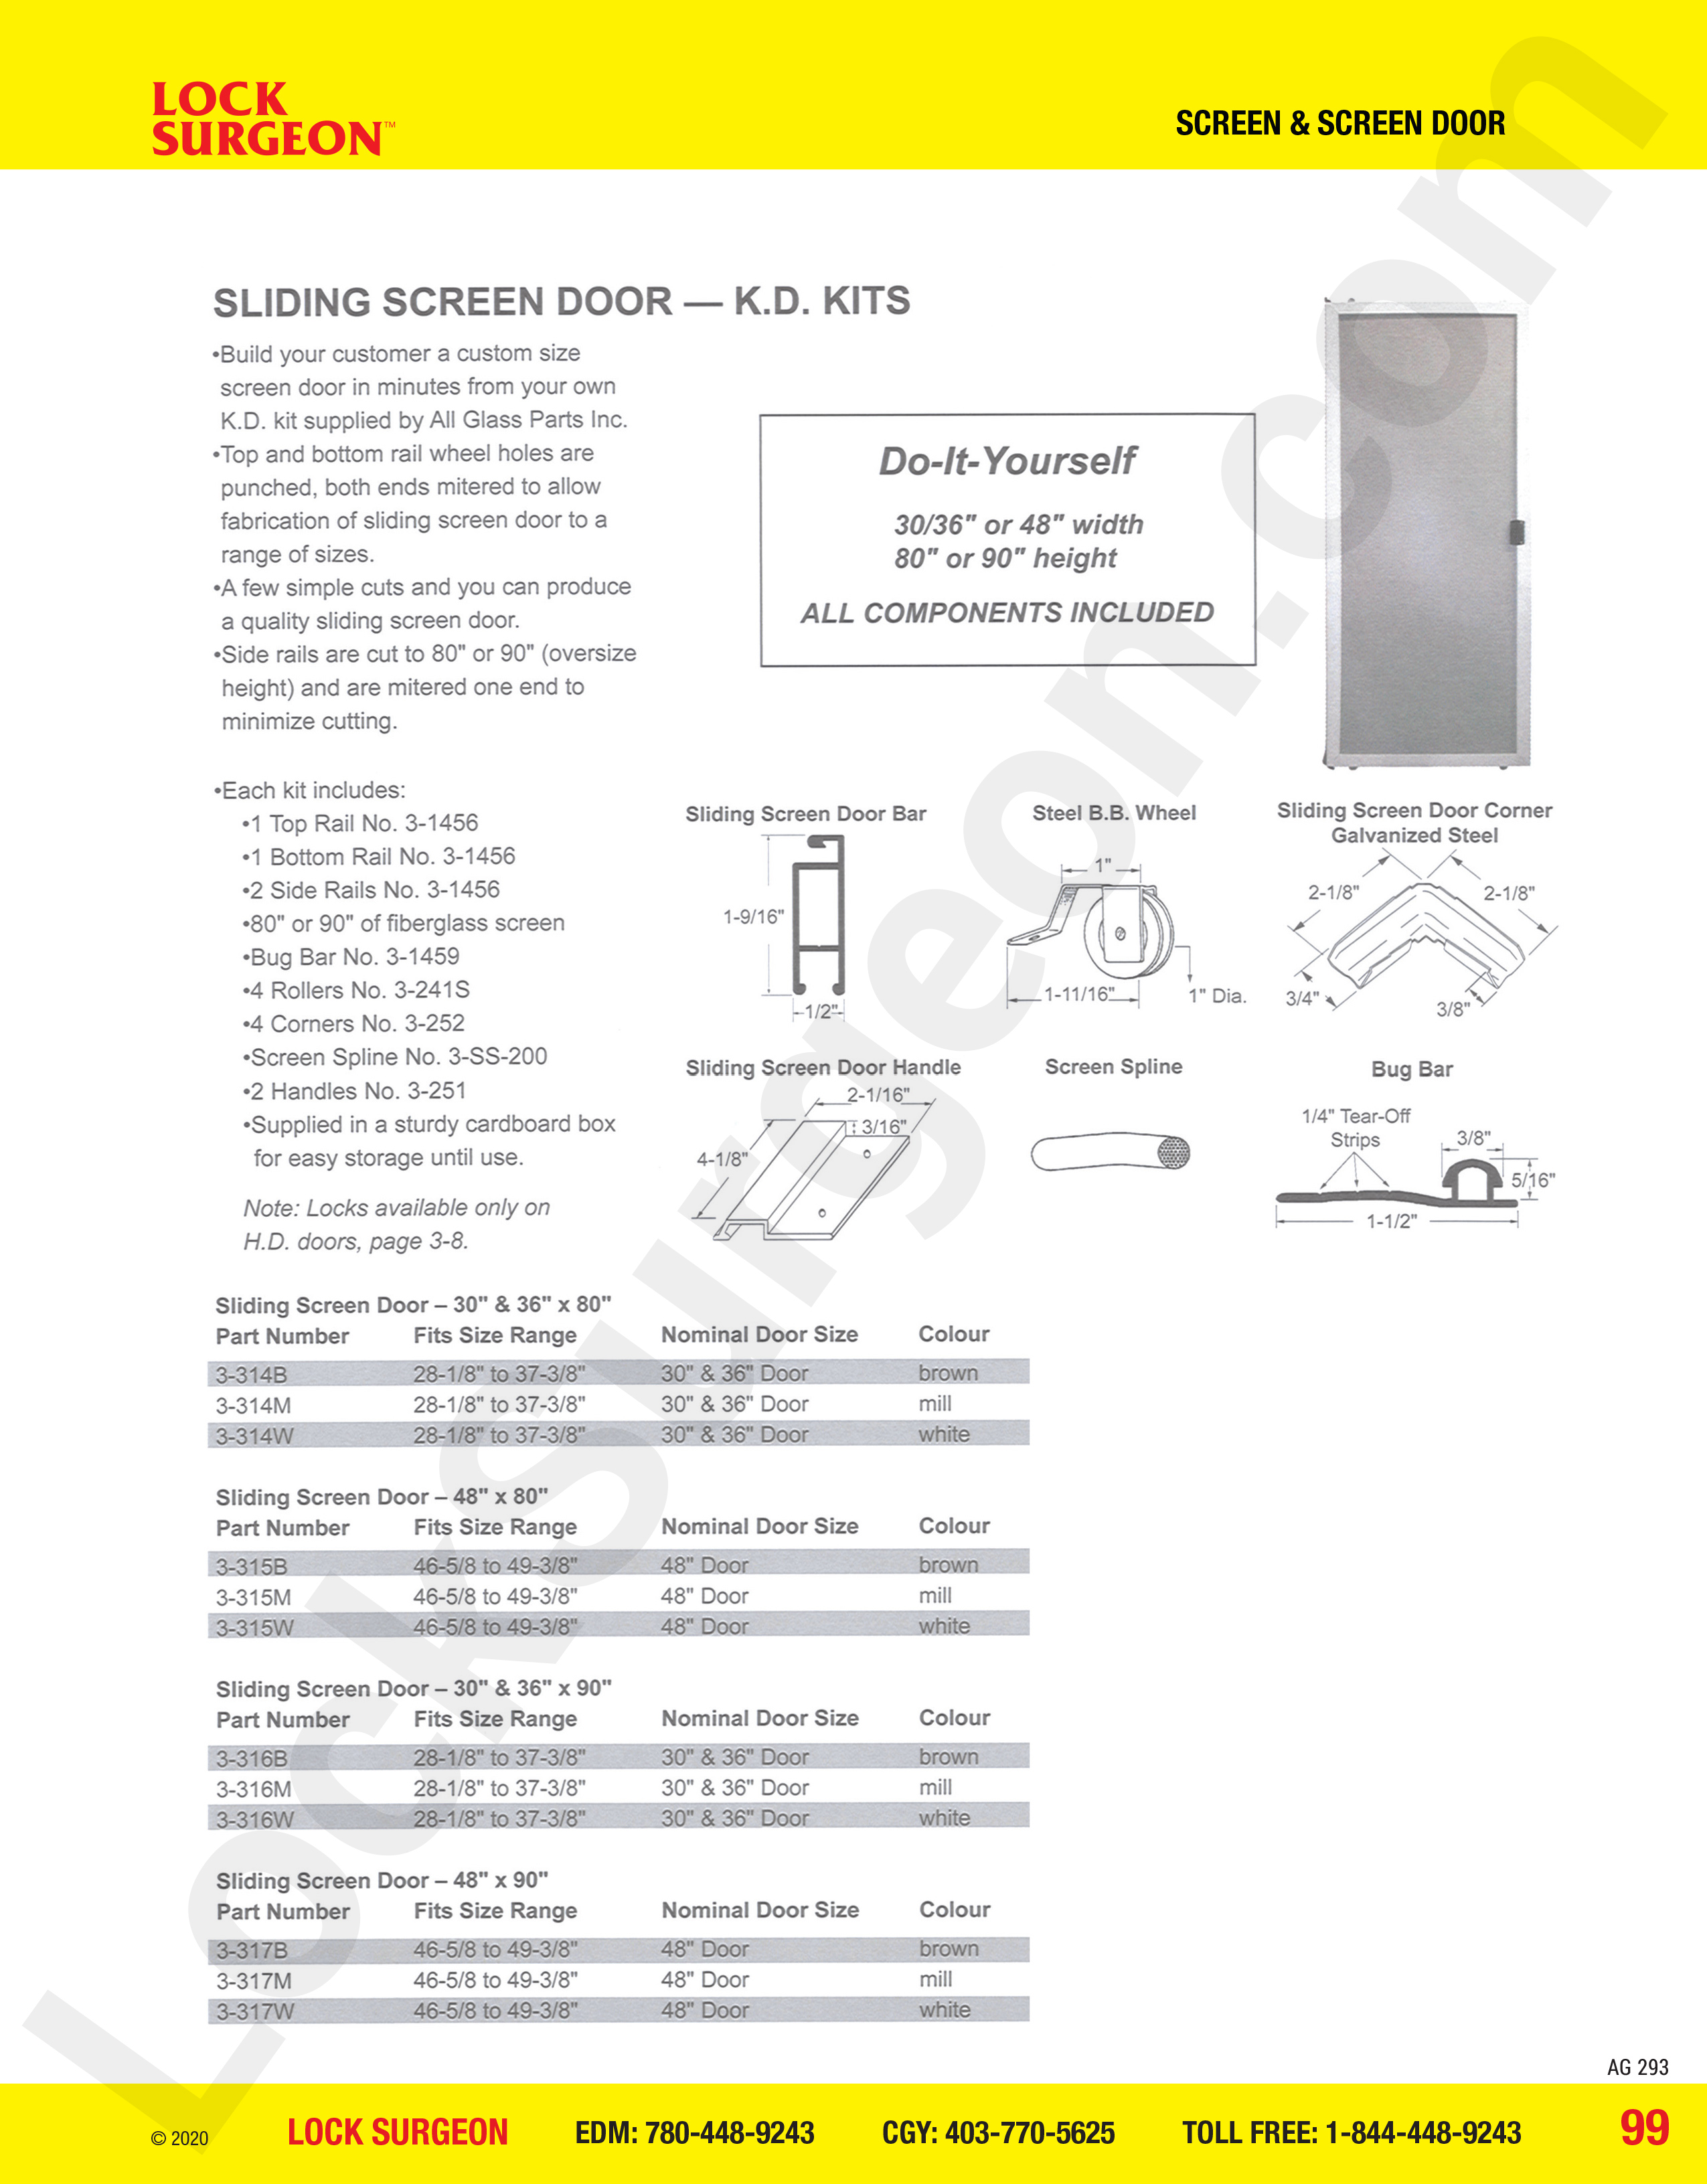 Screen and Screen Door window sliding screen door kits